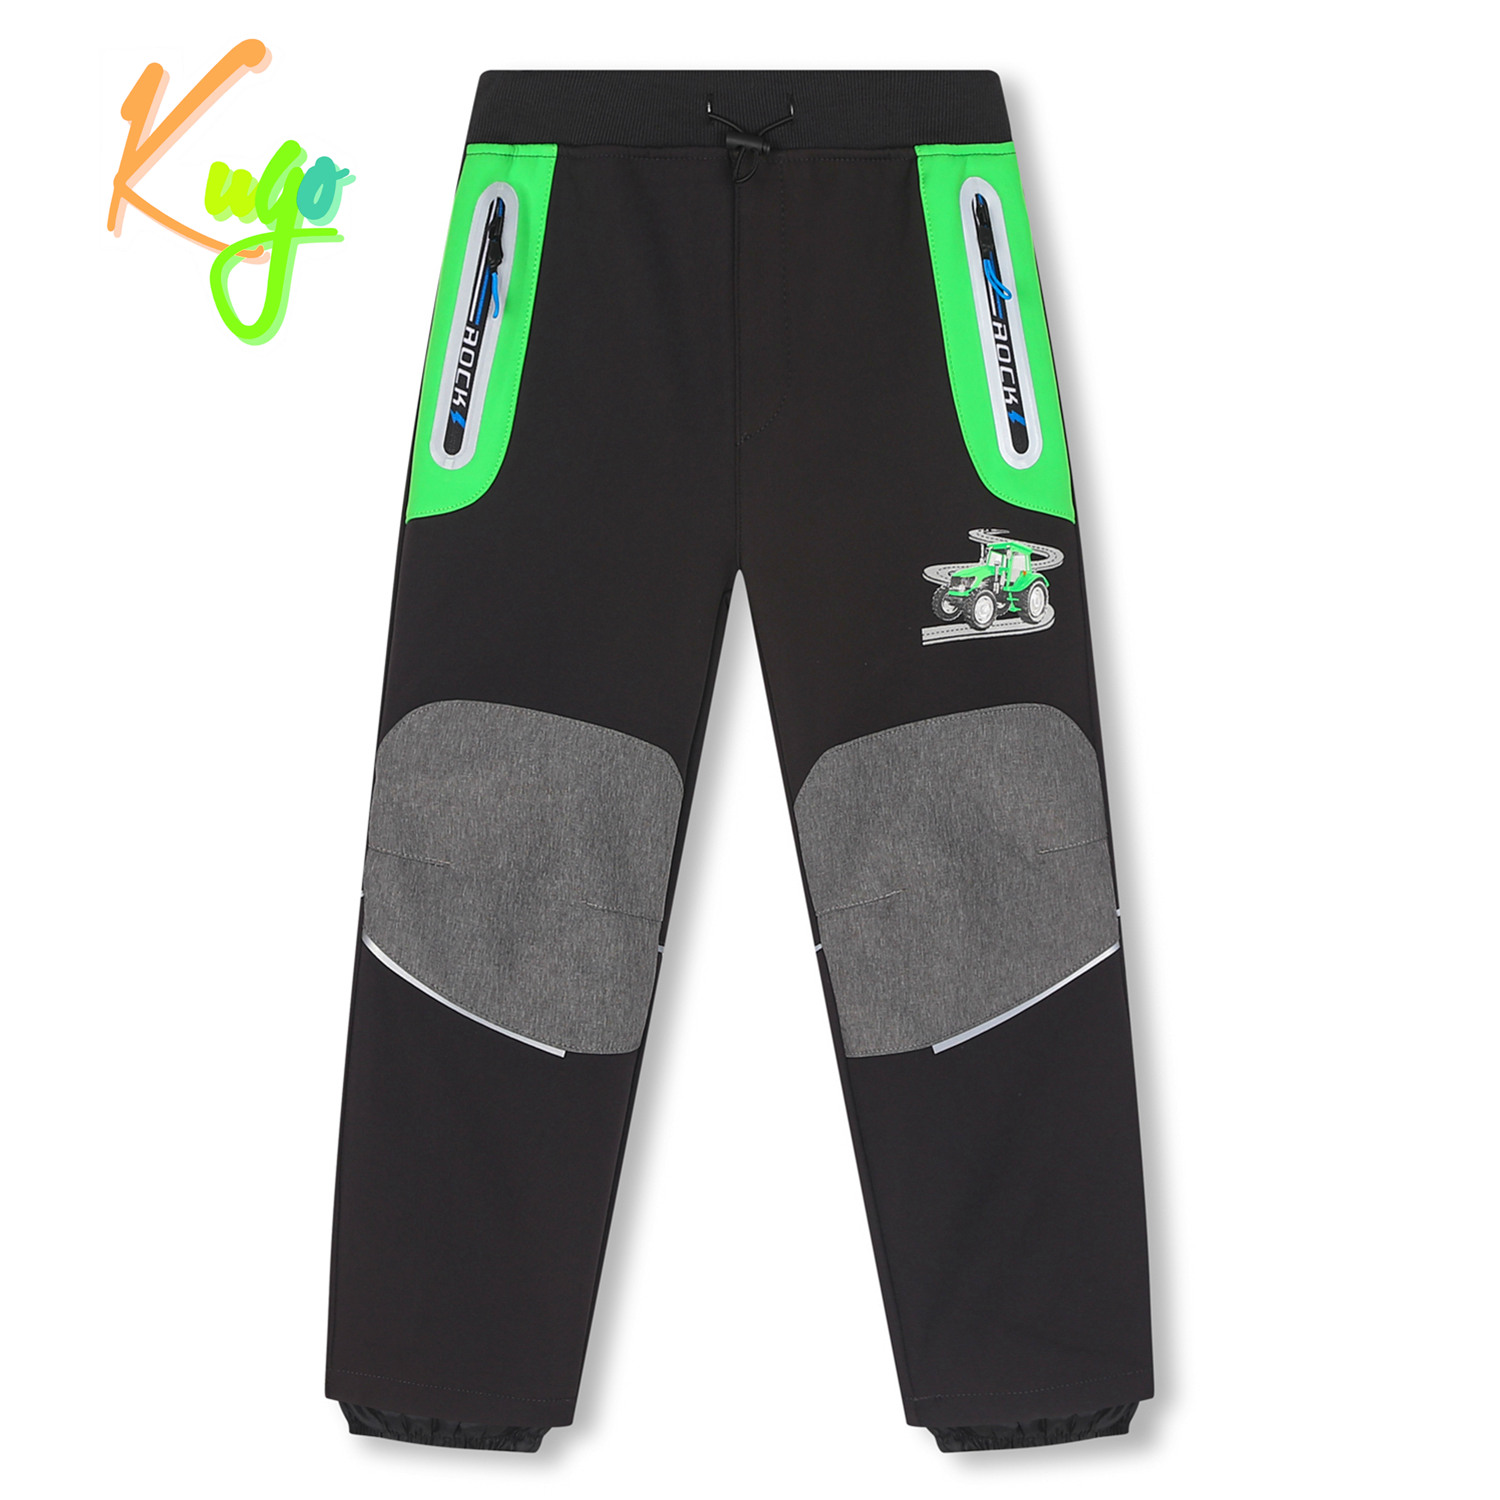 Chlapecké softshellové kalhoty, zateplené - KUGO HK2512, tmavě šedá / zelená aplikace Barva: Šedá tmavě, Velikost: 98